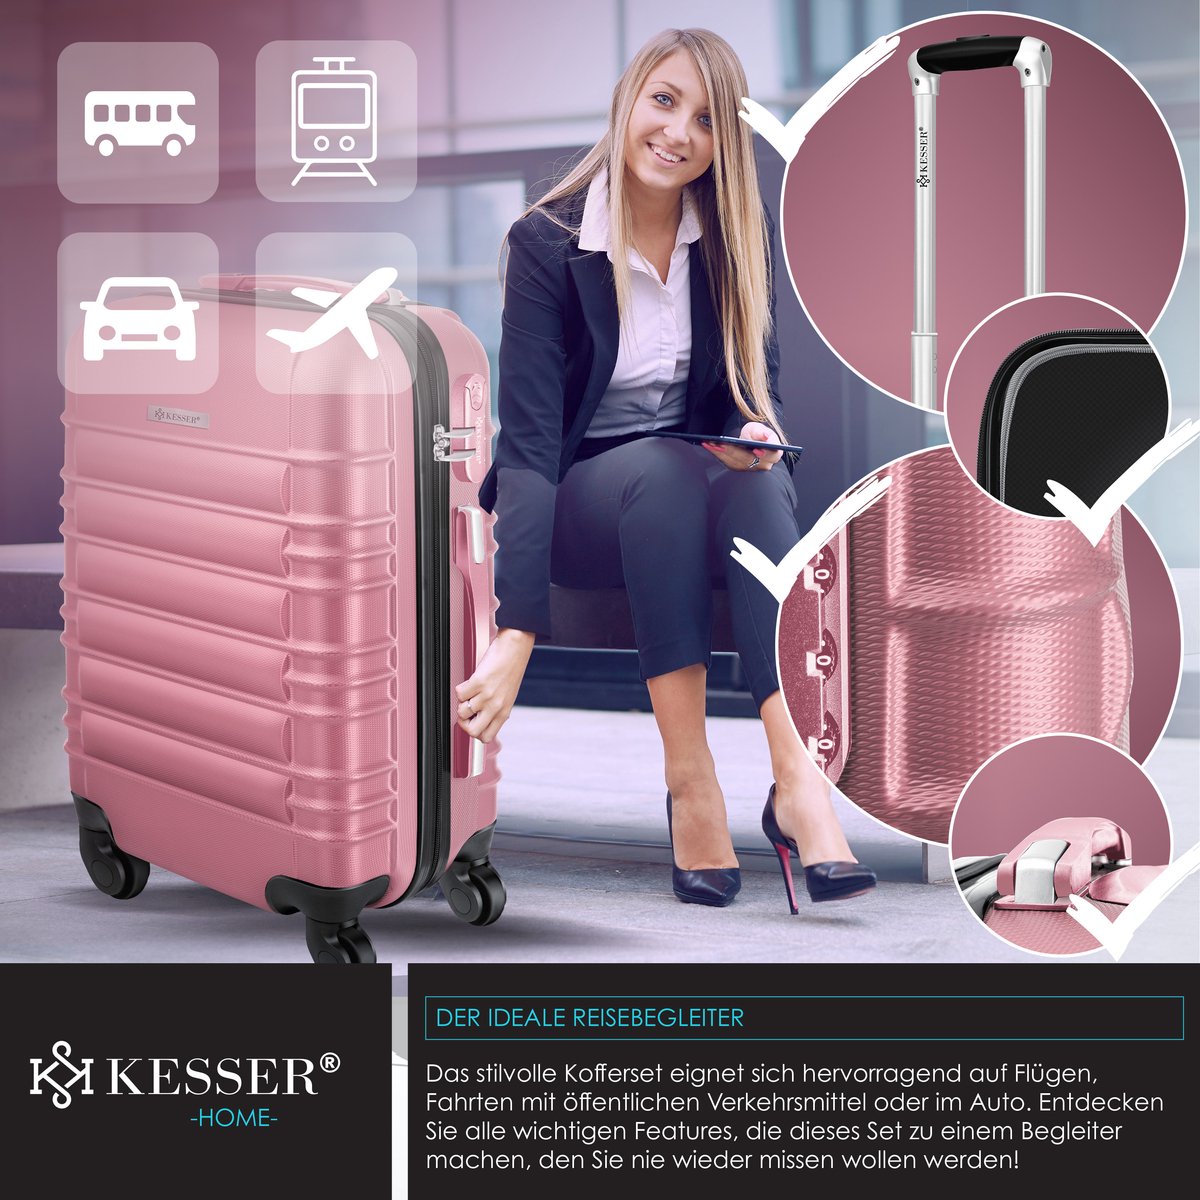 KESSER® 3pcs valise rigide, ensemble valise, ensemble de valises